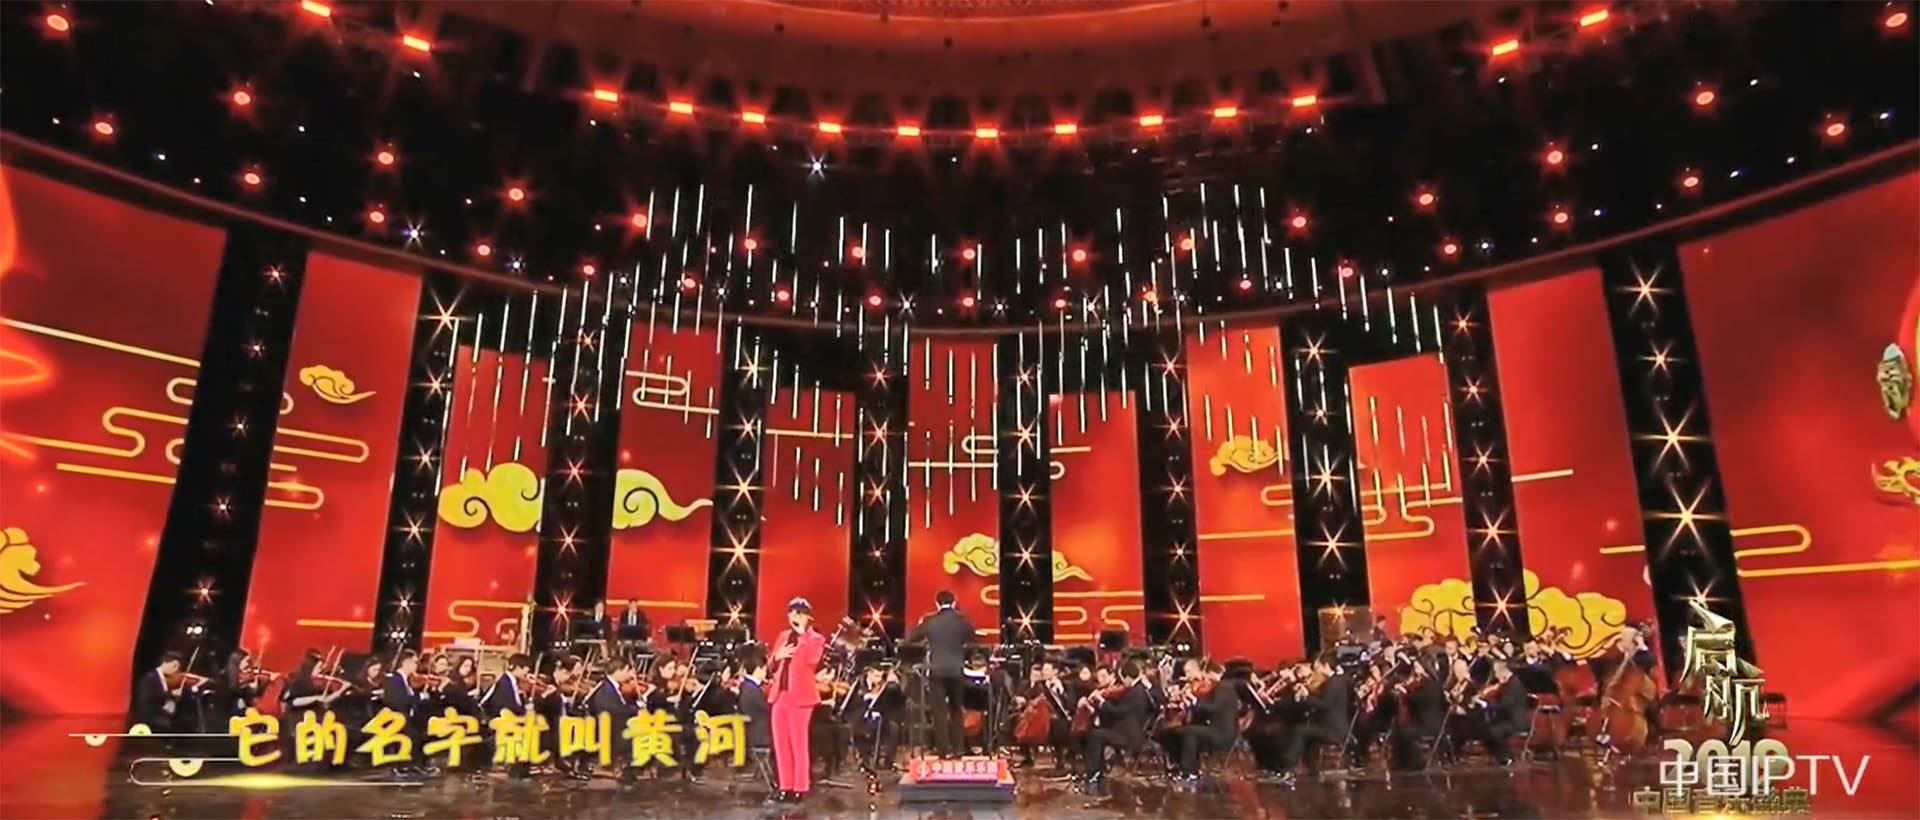 CCTV 1-program for musikkfestivalen 2019 (2)